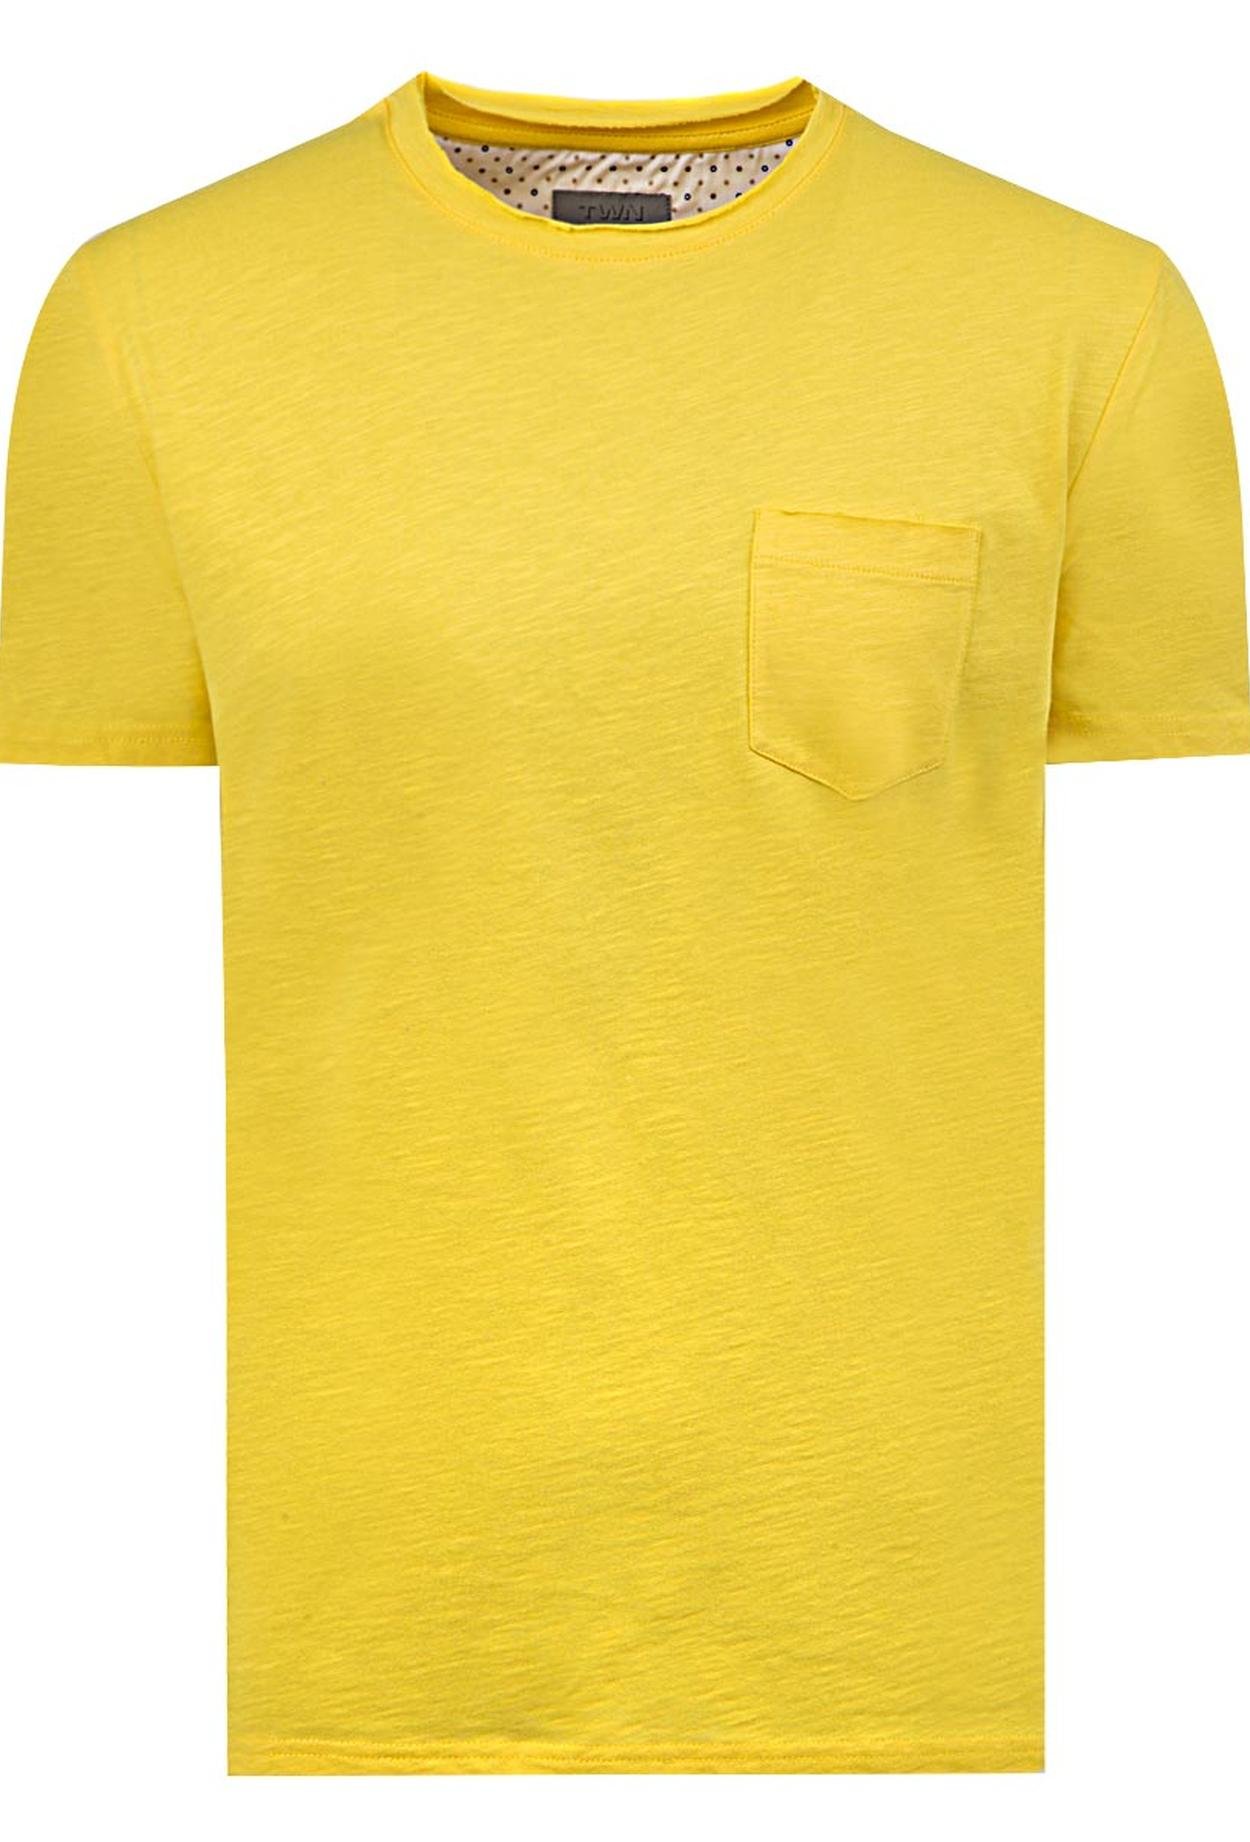 Twn Slim Fit Sarı Desenli T-shirt